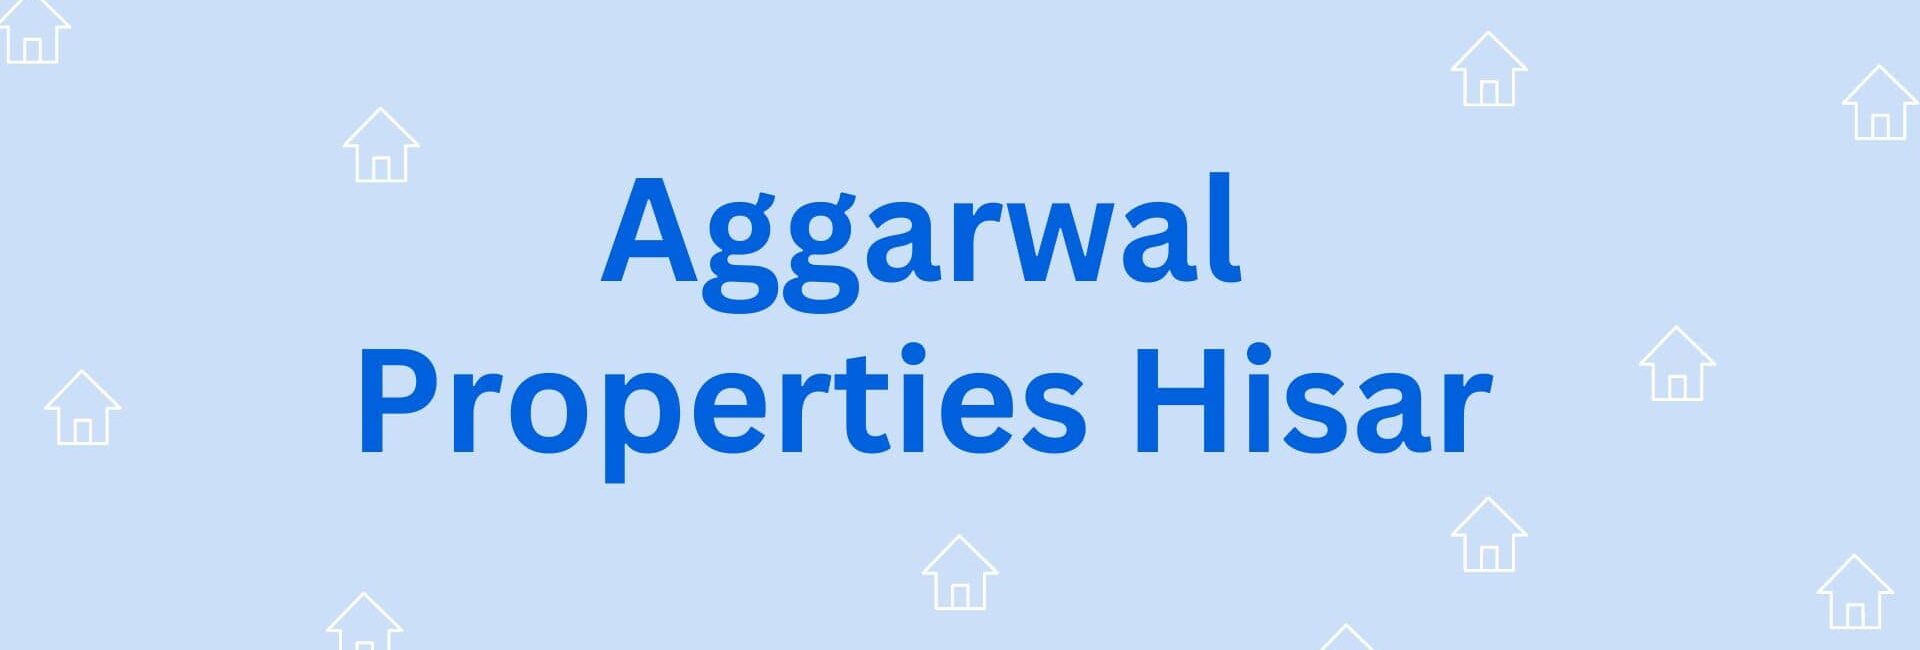 Aggarwal Properties Hisar - Property Dealer in Hisar azad nagar